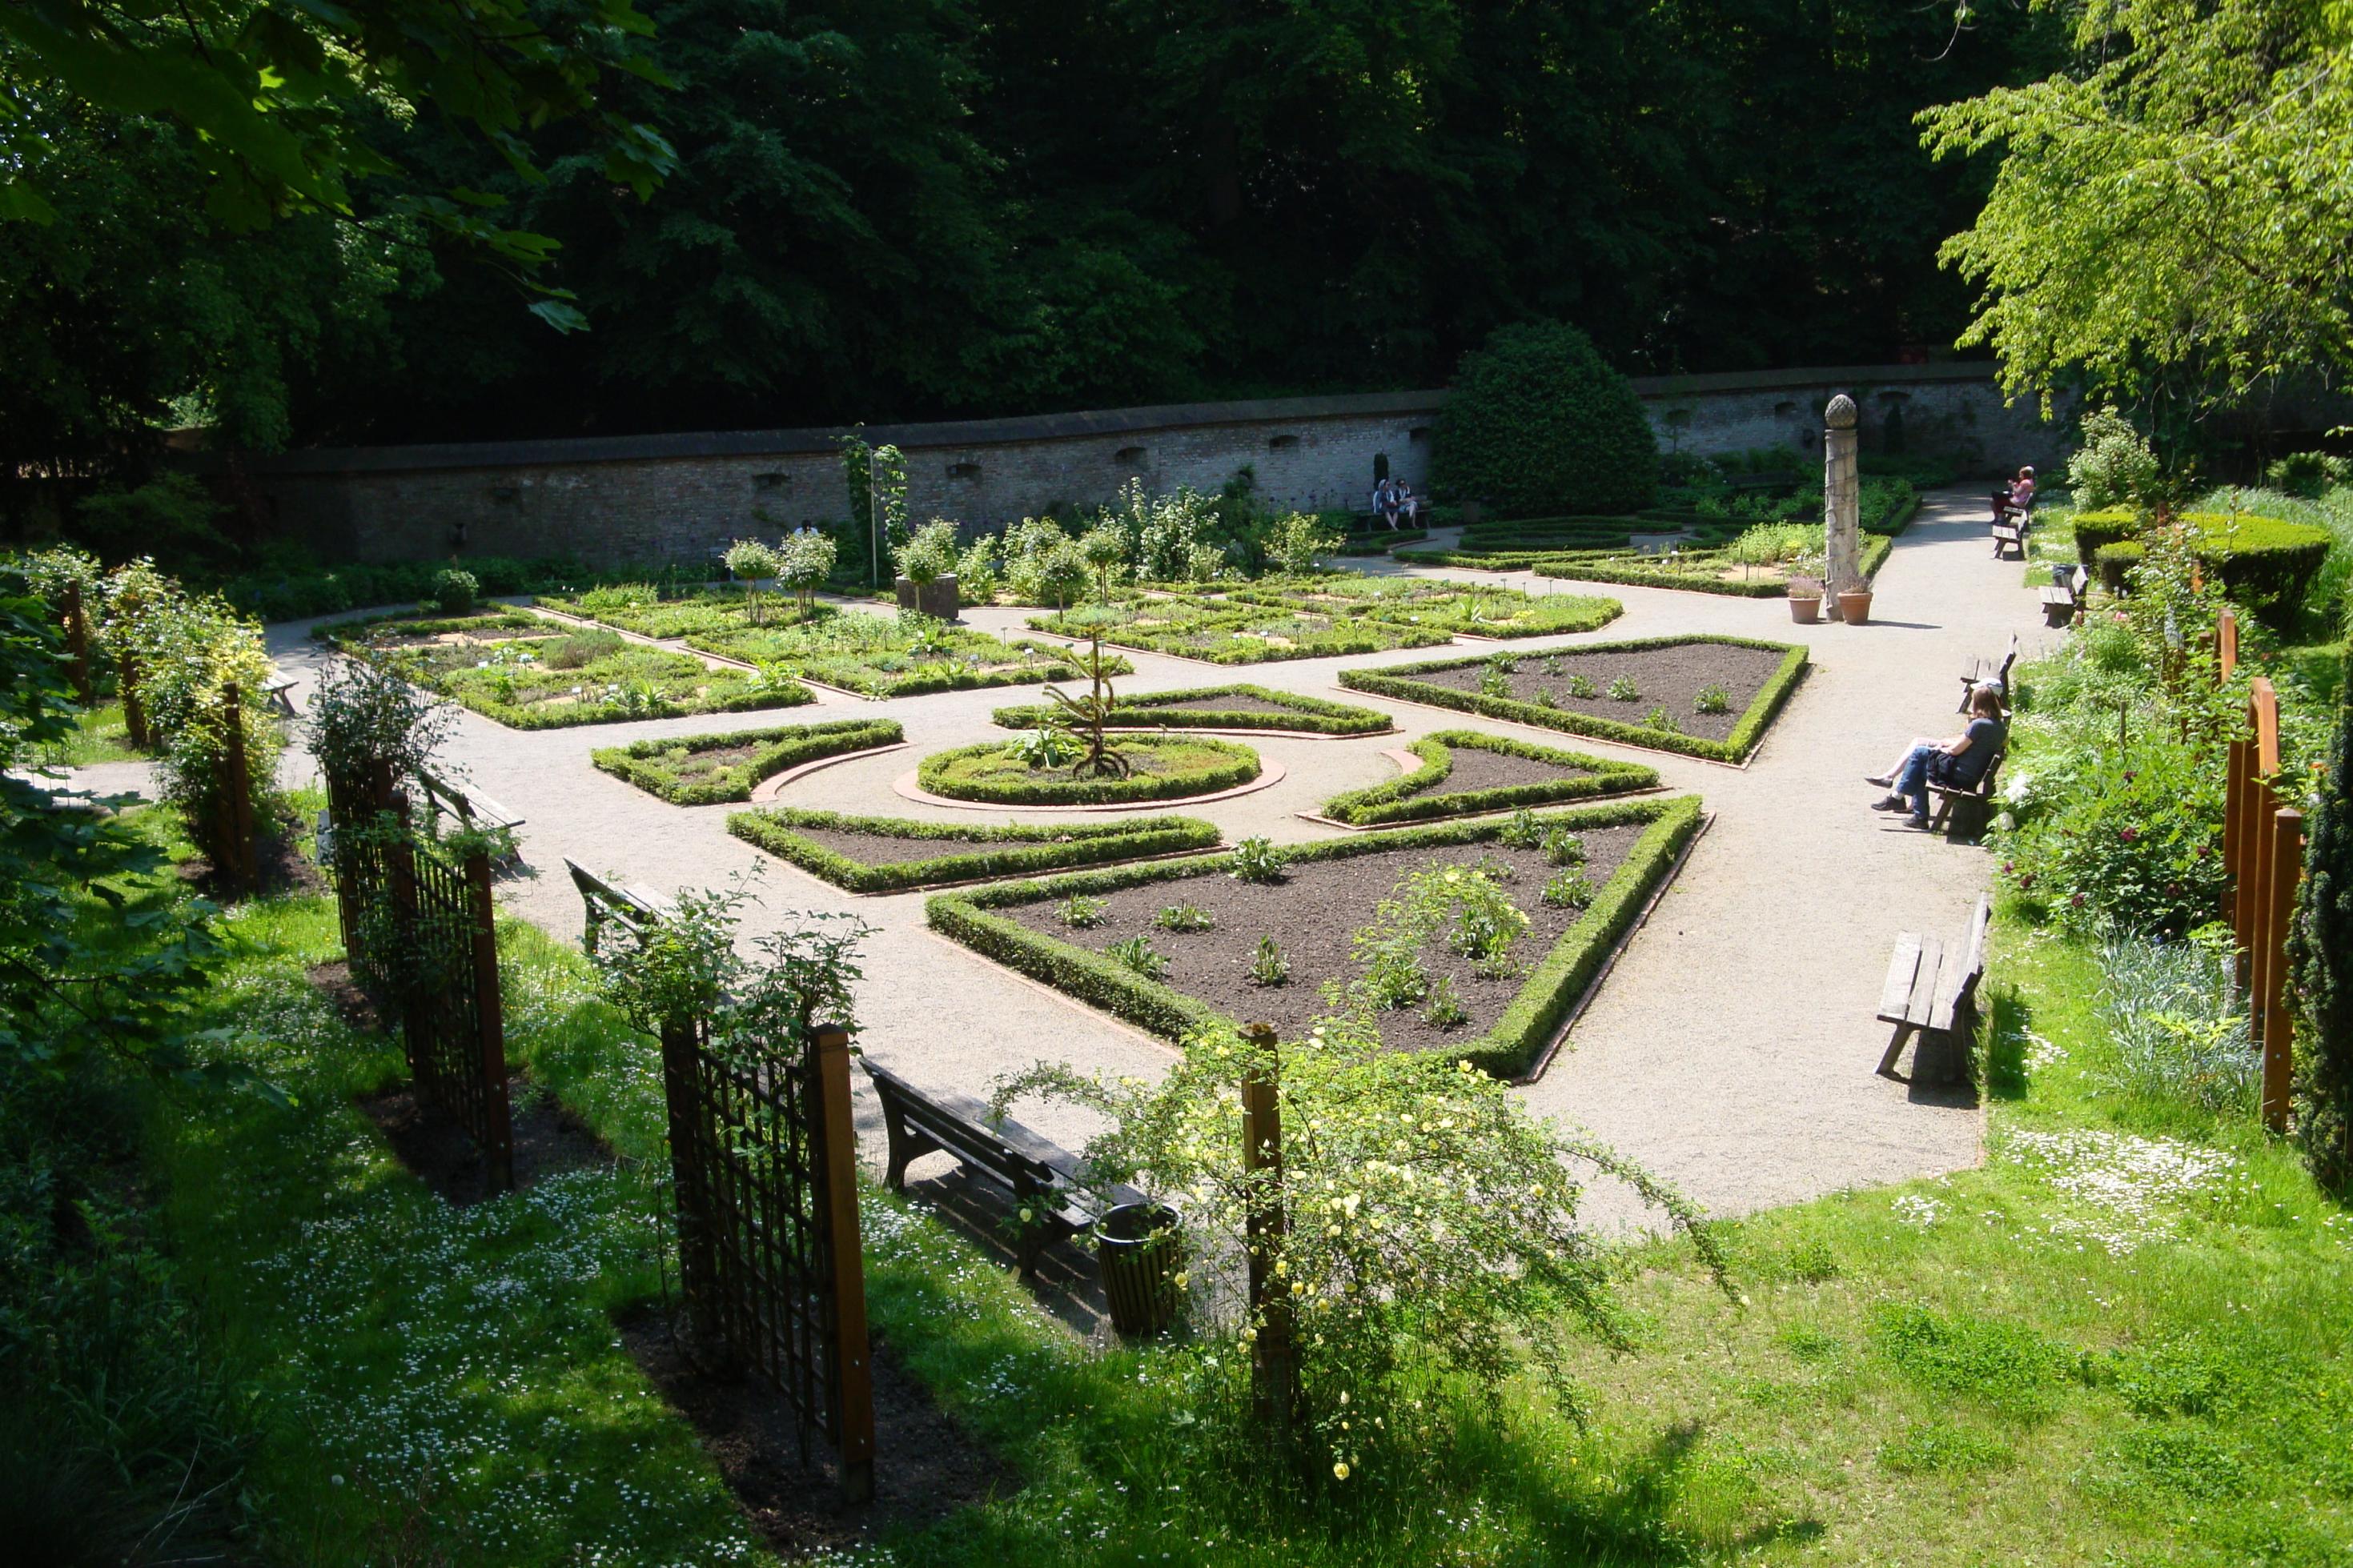 Der in den 1980er von der Stadt Augsburg eingerichtete Kräutergarten befindet sich direkt vor den historischen Stadtmauern.  Die Besucher darf Kräuter in Maßen ernten. mit Buchs eingefassten Kräuterbeeten finden sich über 60 verschieden Minz-Sorten, hinzu kommen Duftgeranien, Salbei- und Thymiangewächse. Der Garten wurde nach dem Vorbild mittelalterlicher Klostergärten entworfen.